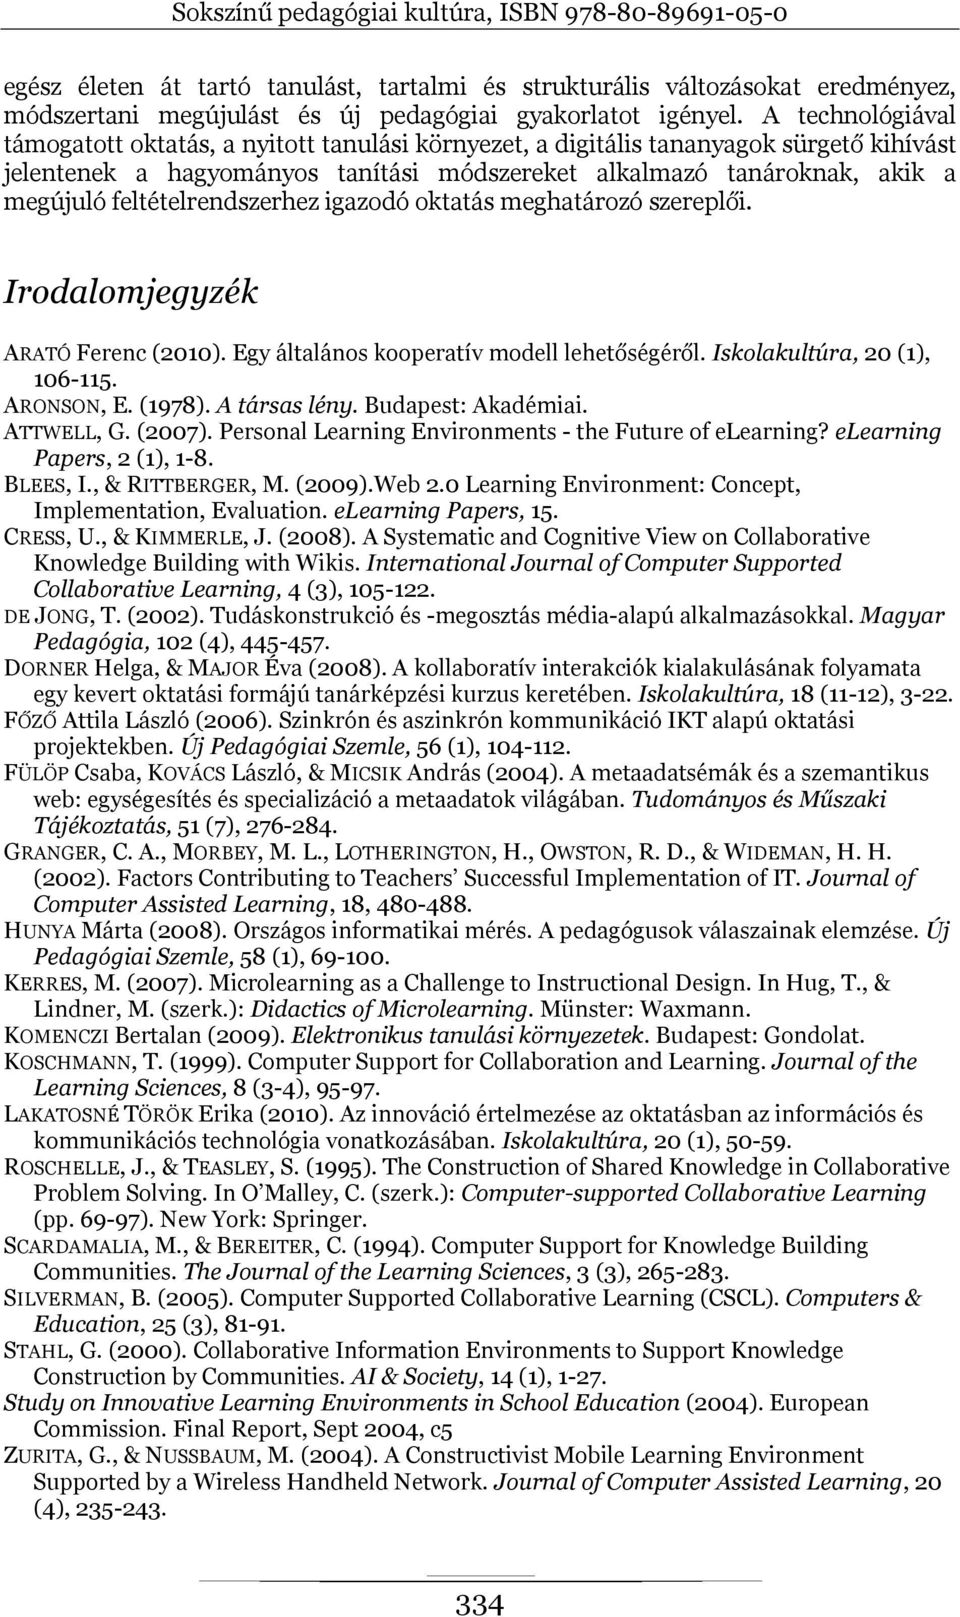 feltételrendszerhez igazodó oktatás meghatározó szereplői. Irodalomjegyzék ARATÓ Ferenc (2010). Egy általános kooperatív modell lehetőségéről. Iskolakultúra, 20 (1), 106-115. ARONSON, E. (1978).